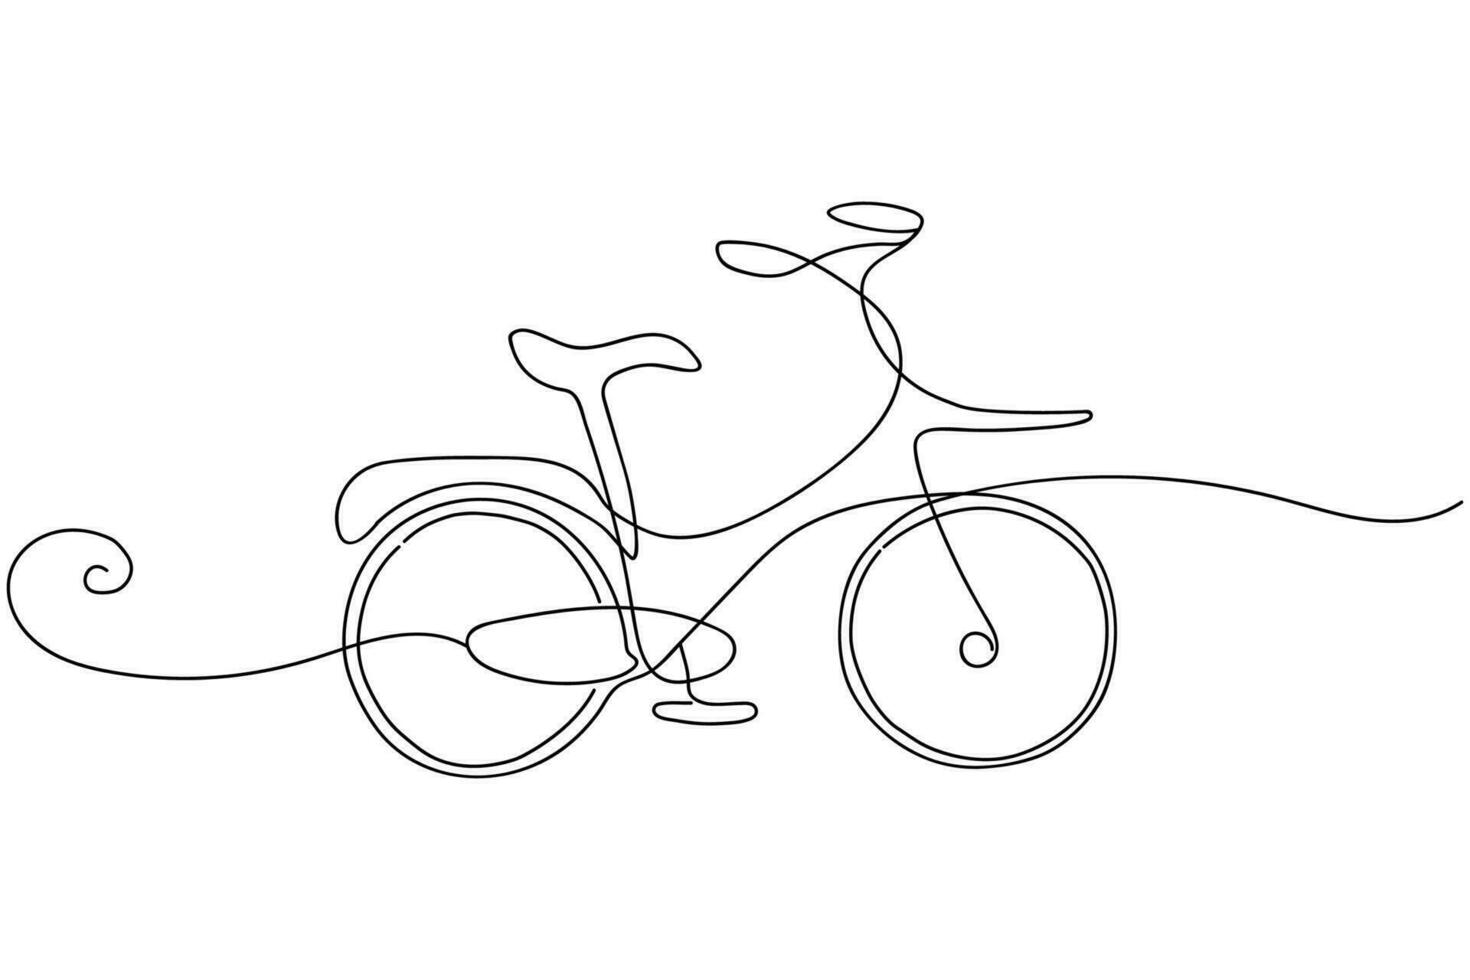 kontinuerlig en rad ritning vintage retro urban stadscykel, ekologisk sporttransport. avkopplande cykel för gemenskap. hälsosam livsstil genom att cykla. enda rad rita design vektorgrafisk illustration vektor